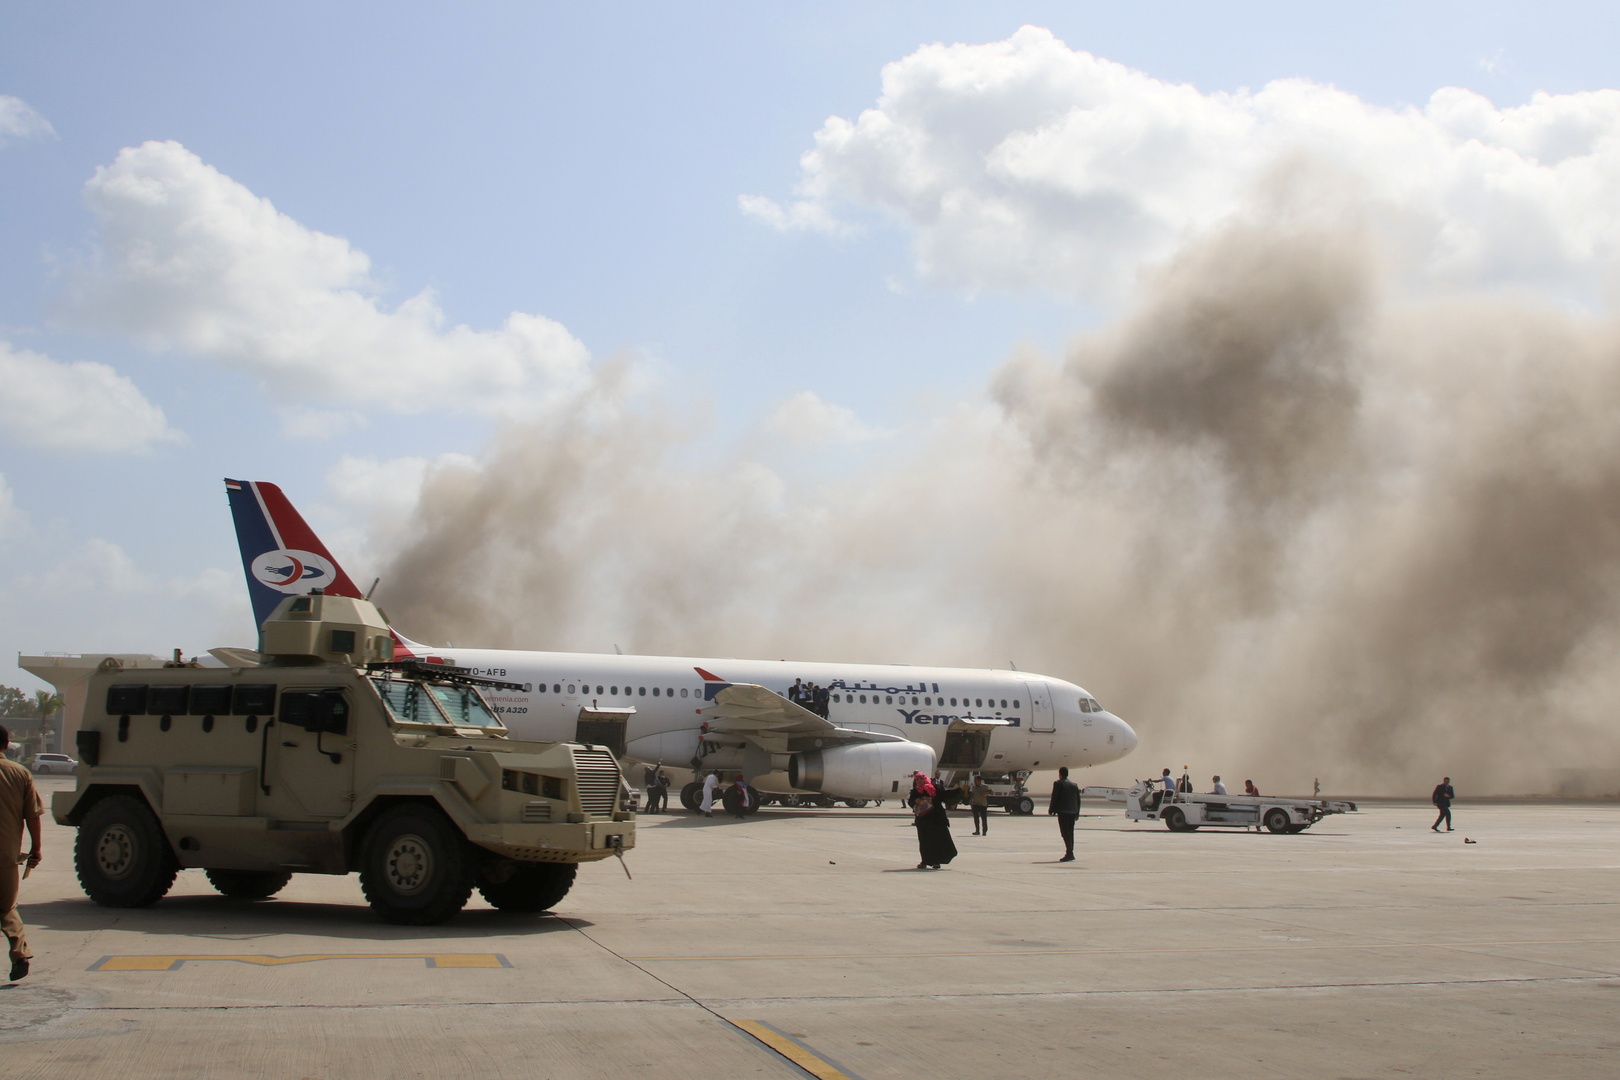 انفجارات تهز مطار عدن بالتزامن مع وصول الحكومة اليمنية الجديدة إليه